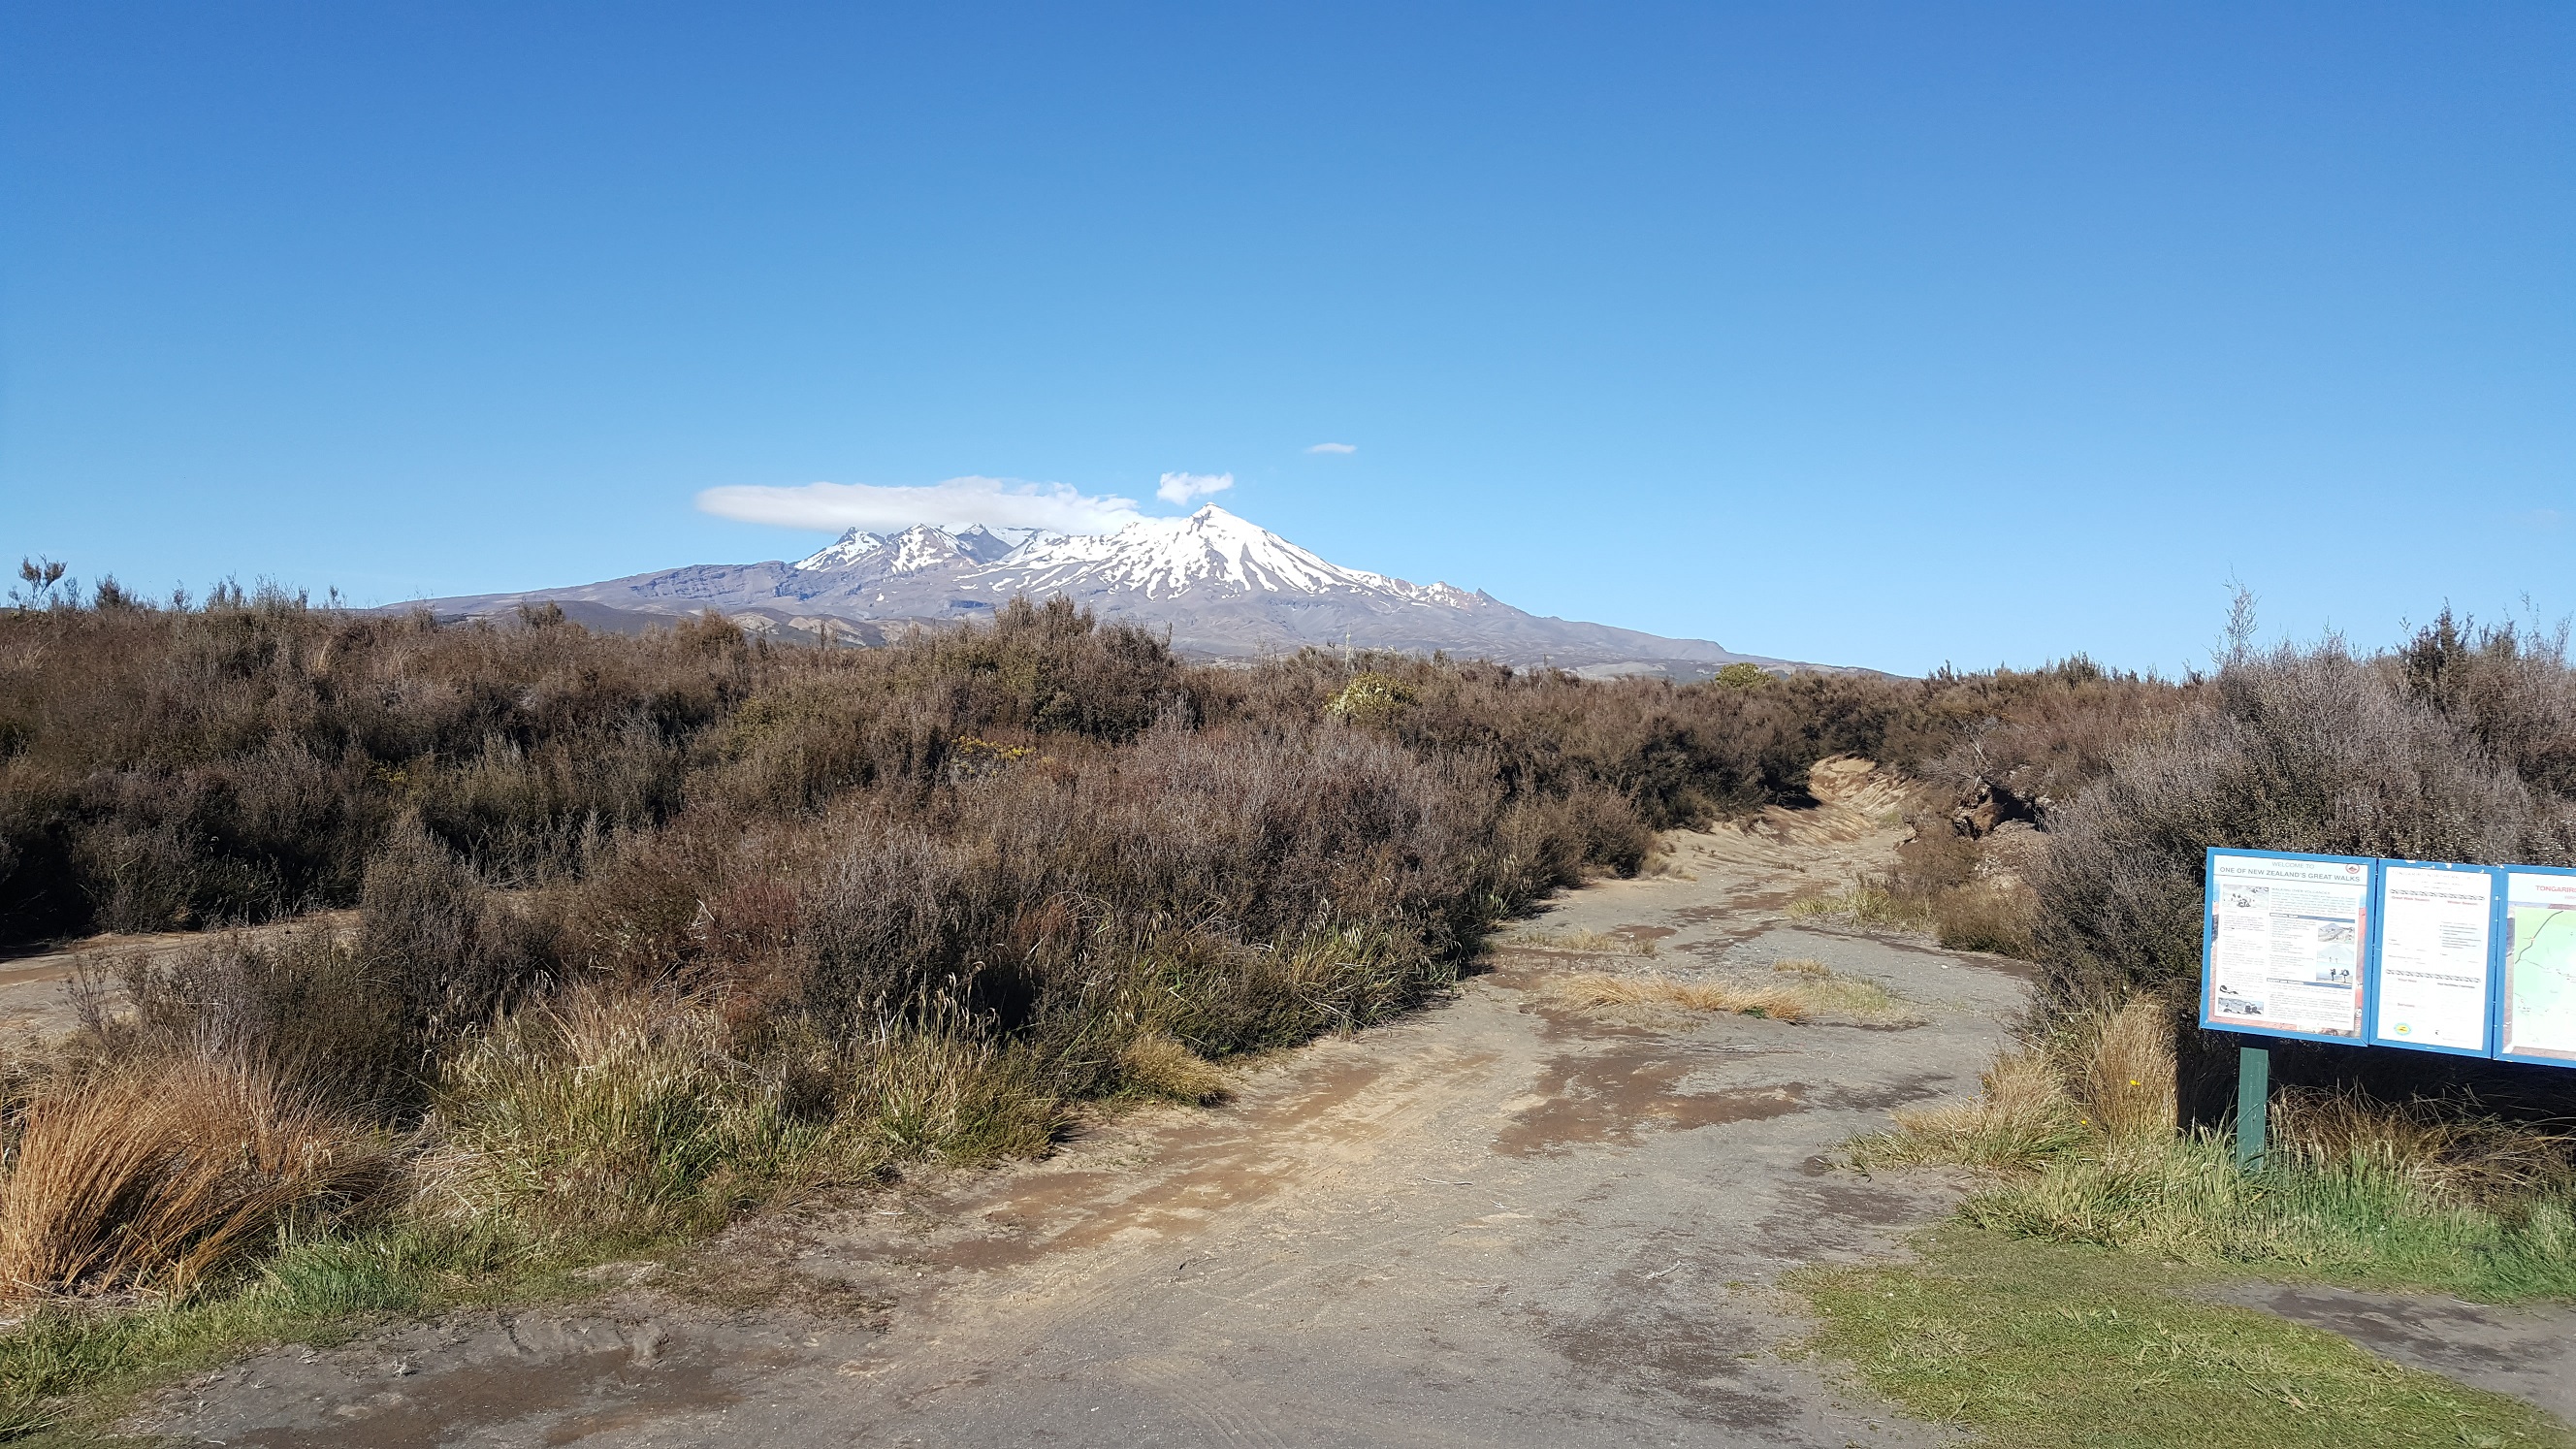 Mini-Hike: Desert Road to Whakapapa Village via Waihohonu Hut – One Fat ...